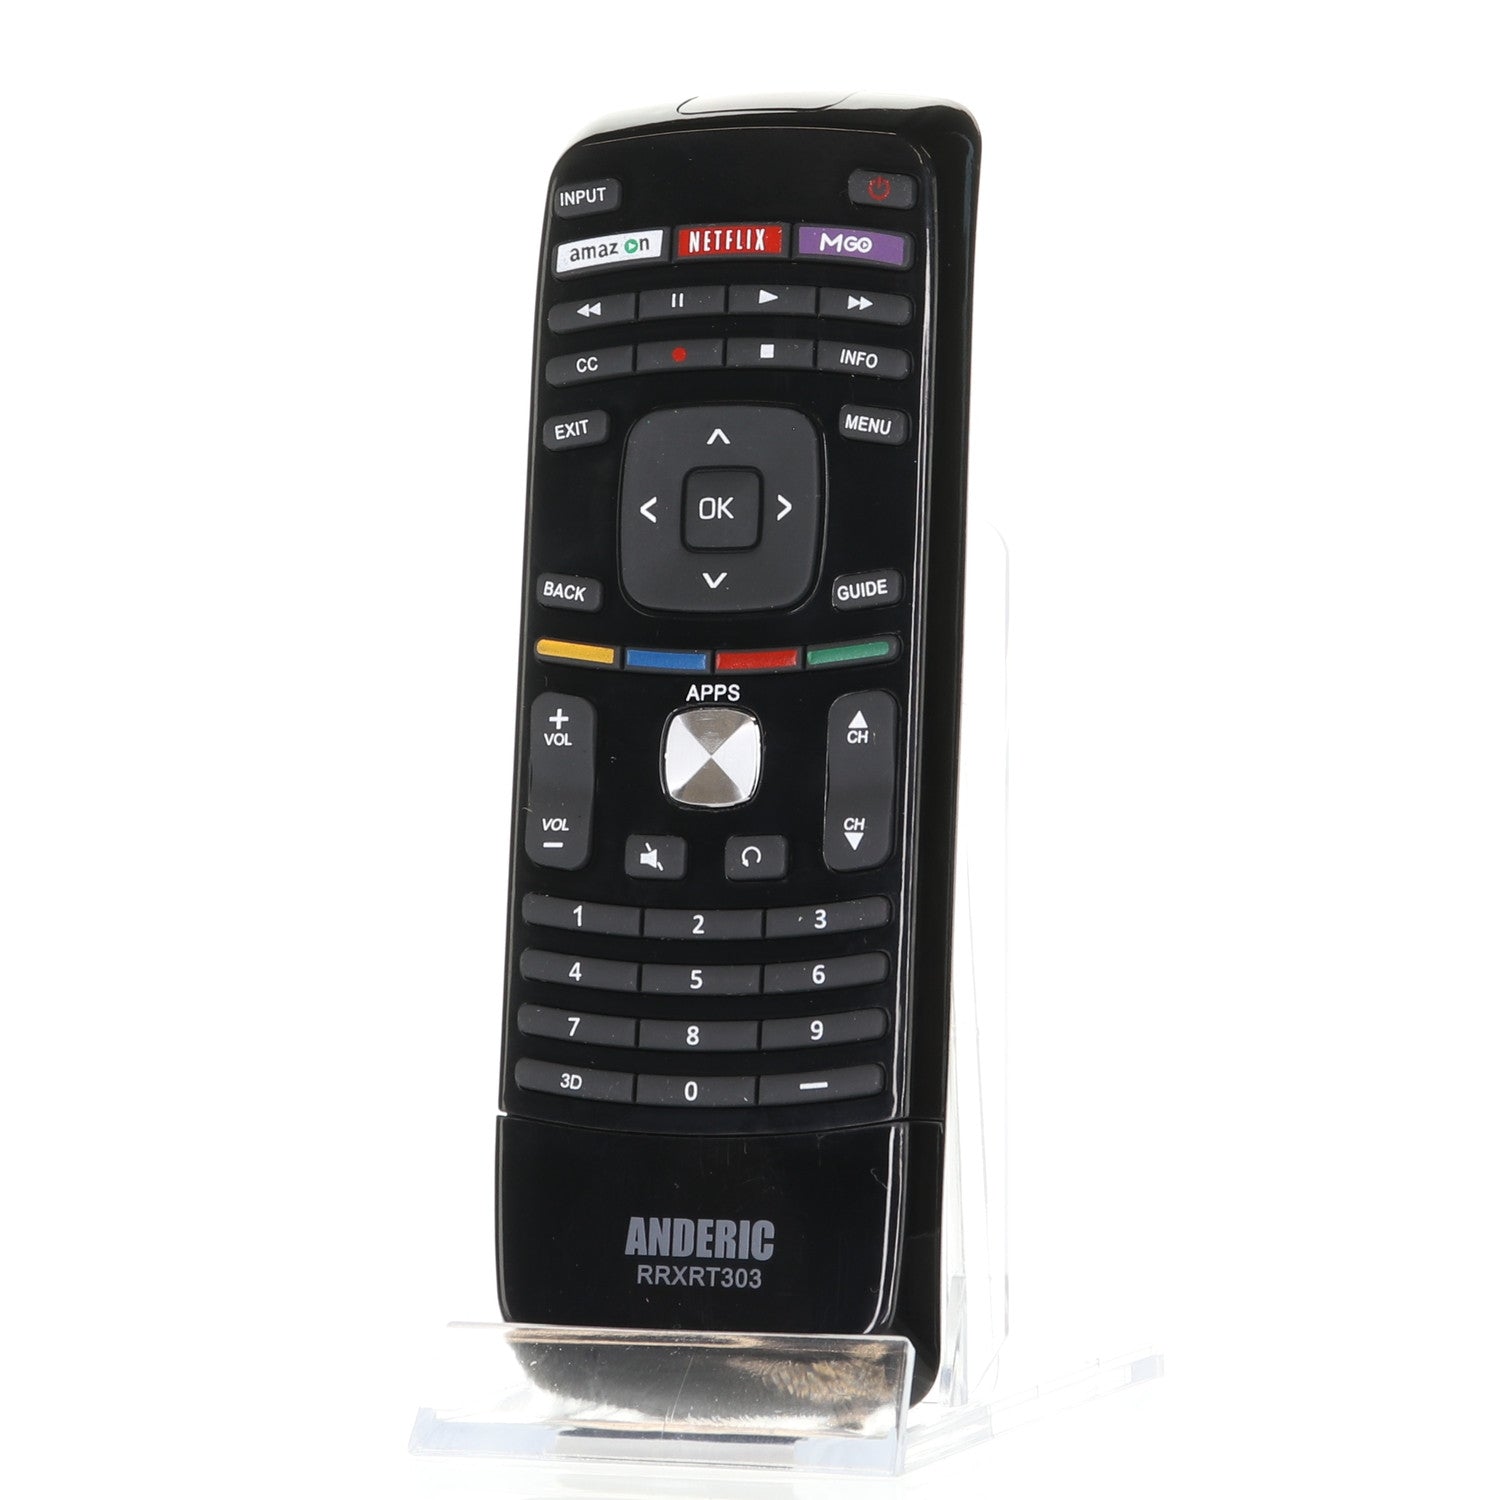 RRXRT303 Remote Control for Vizio® TVs